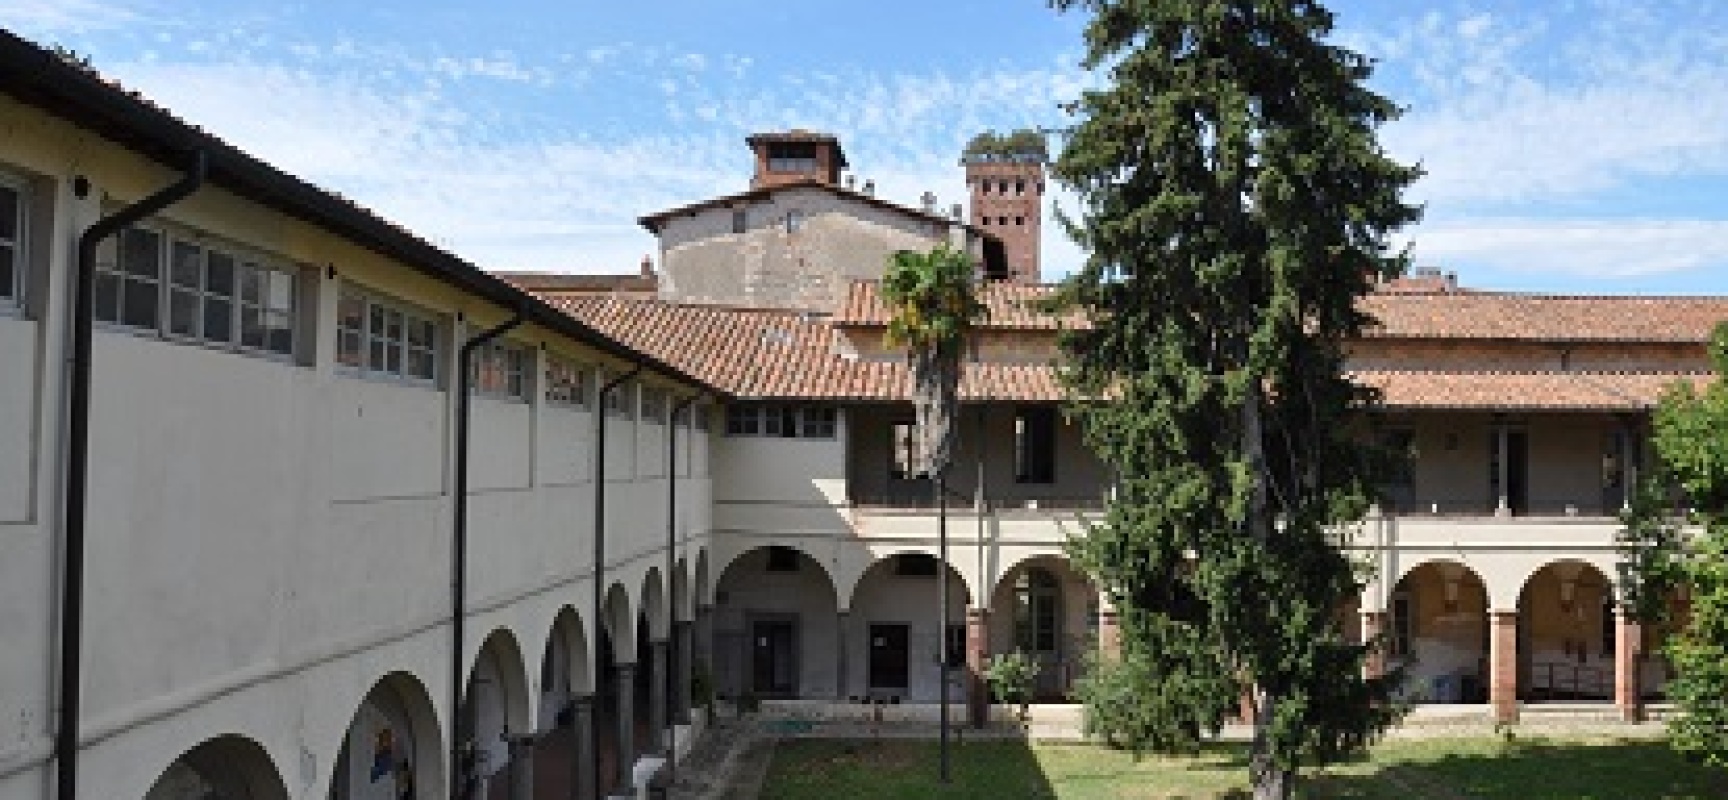 Sicurezza sismica, gli istituti Paladini e Civitali di Lucca trasferiti in una sede provvisoria